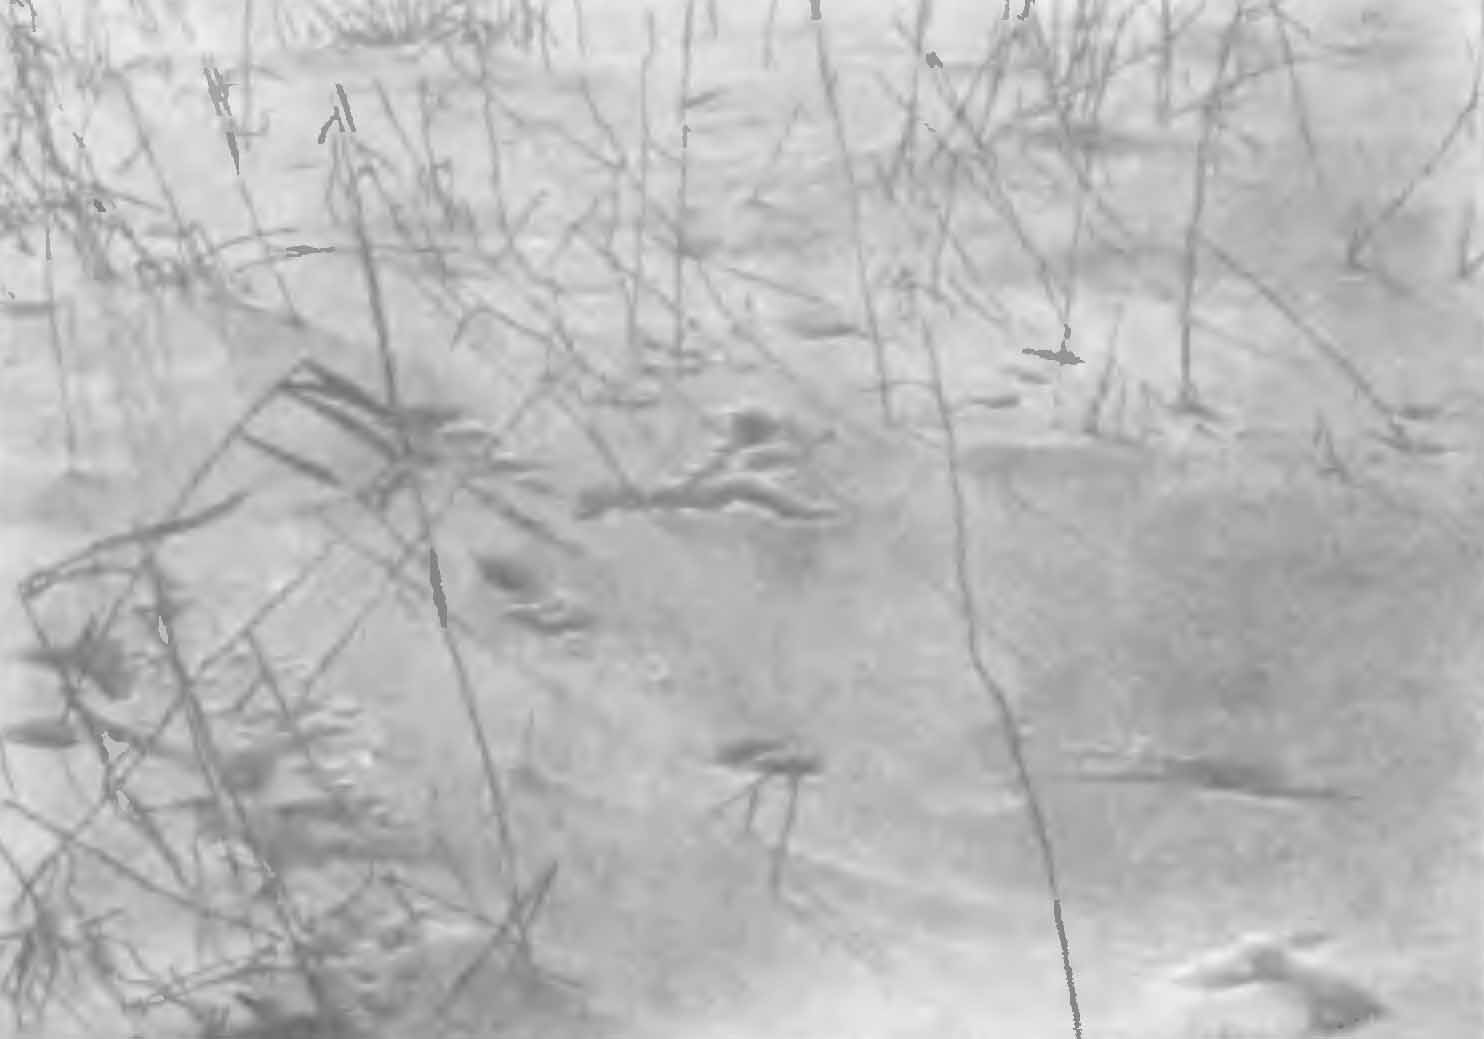 Рис. 3. Следы и нора горностая (Mustela erminea L.) в снегу. Пойма р. Камы, зима 1934/35 гг. (Фот. И. В. Жаркова).
